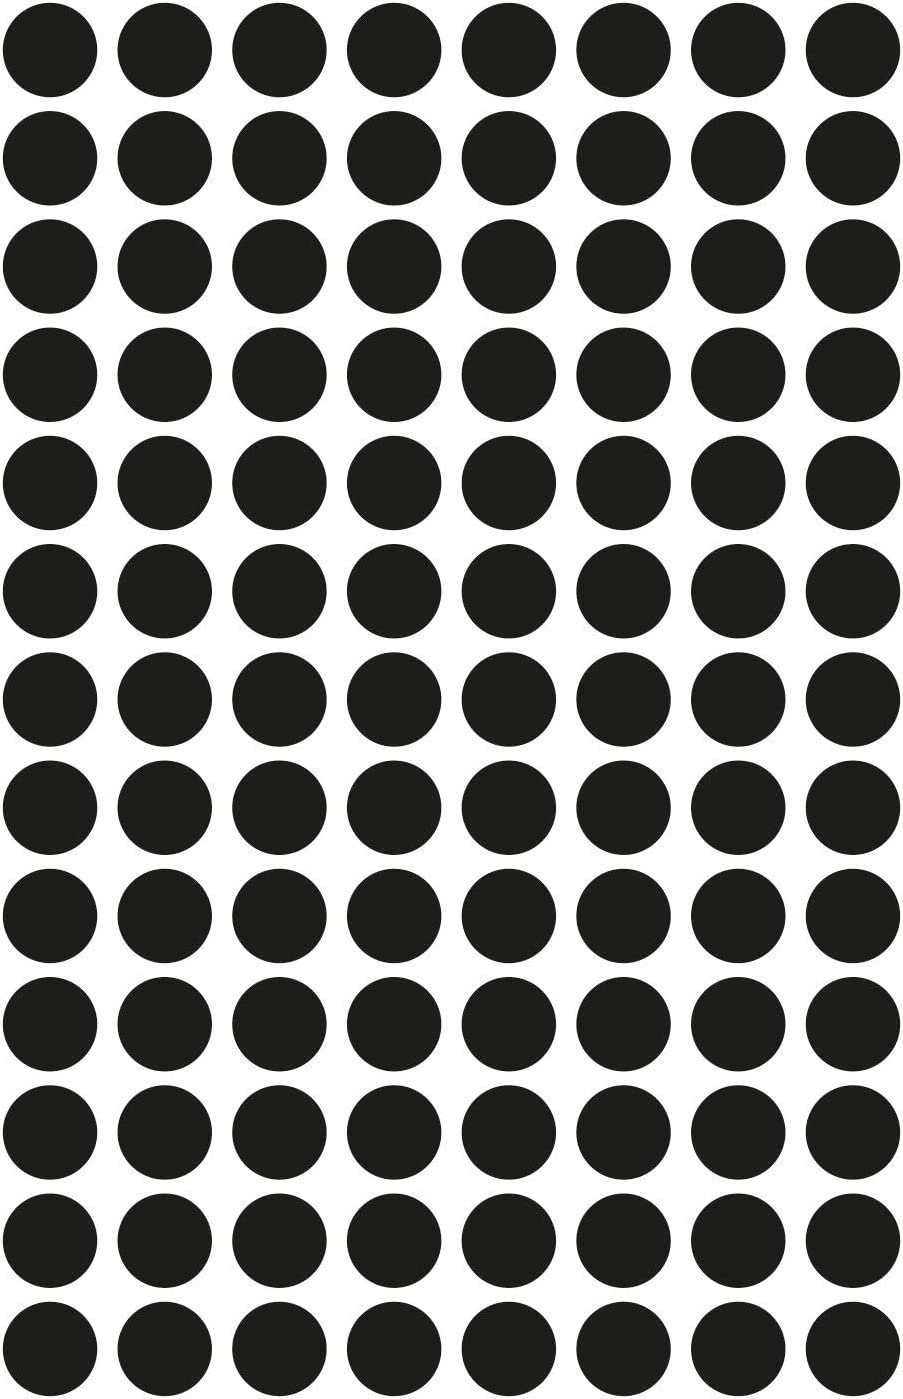 Zweckform Durchmesser 3009, Avery Markierungspunkte, 416x Zweckform 8 mm, AVERY schwar Etiketten